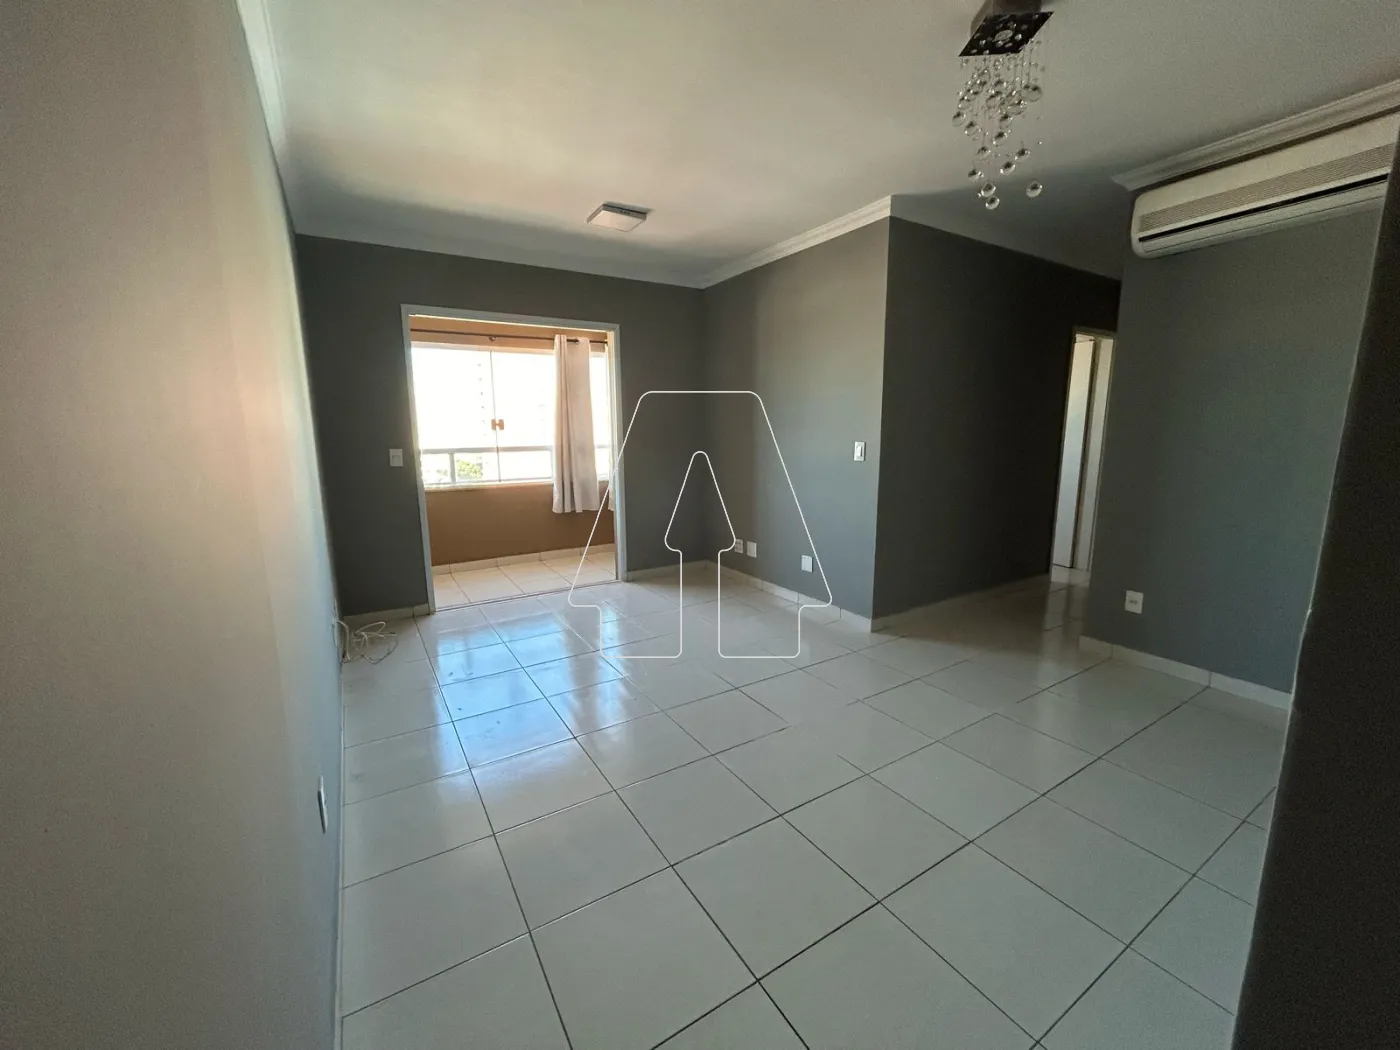 Alugar Apartamento / Padrão em Araçatuba R$ 1.600,00 - Foto 1